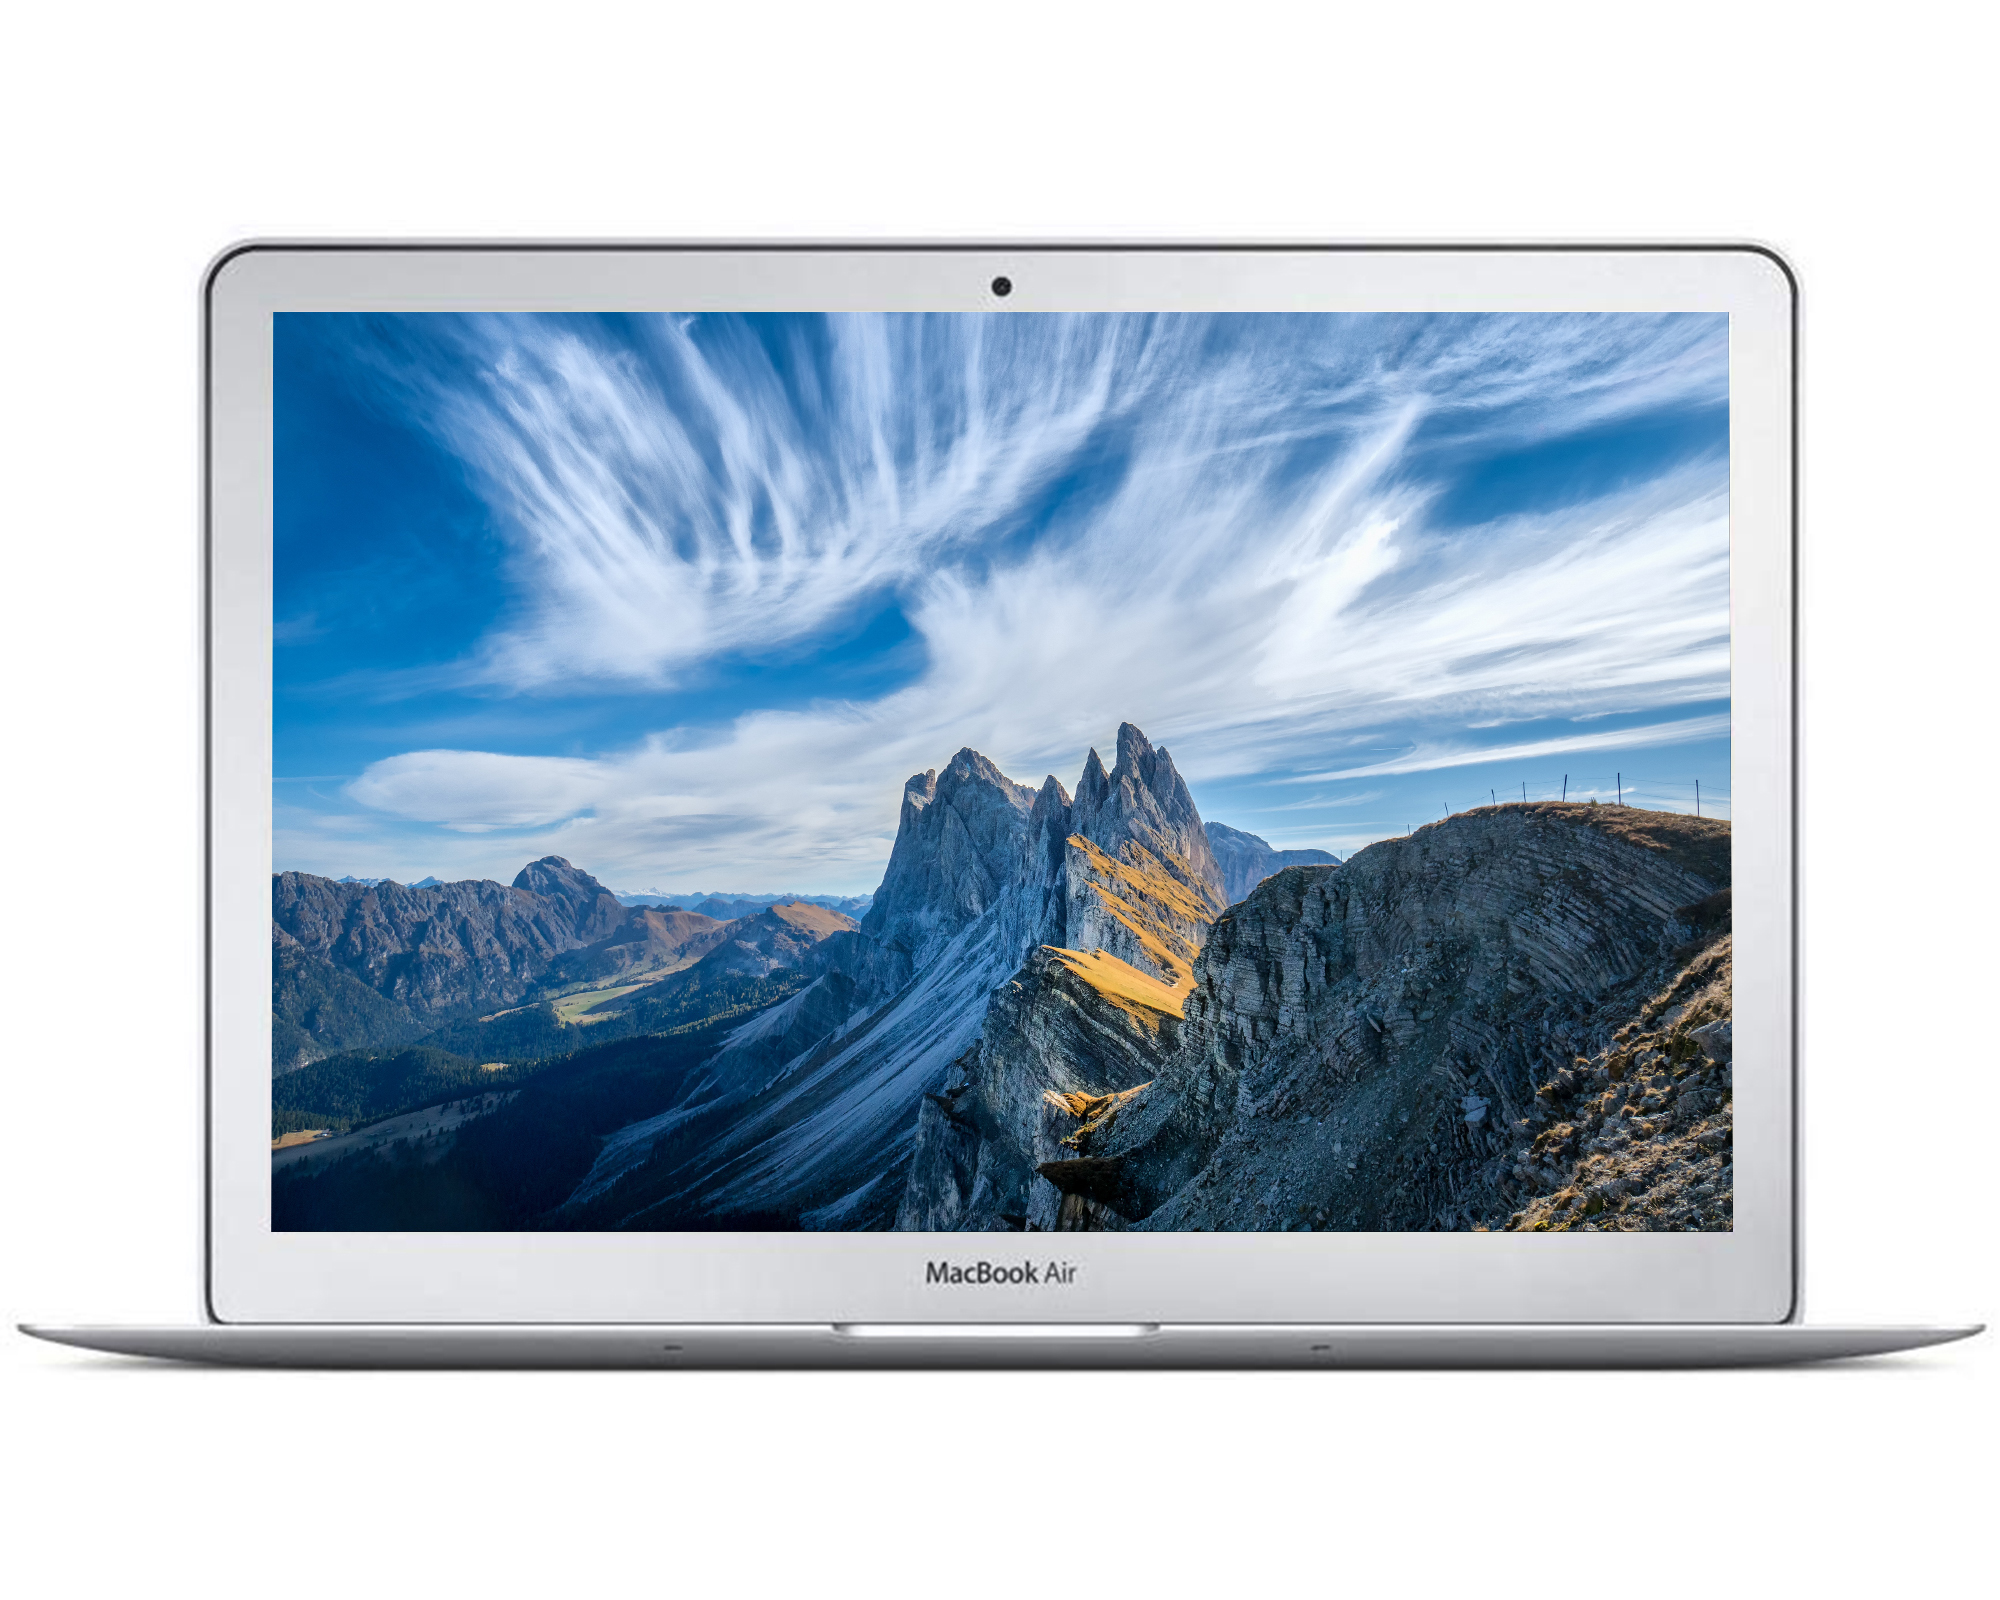 Restored Apple MacBook Air MJVE2LL/A Intel Core i5-5250U X2 1.6GHz 4GB 128GB SSD Silver (Refurbished) - image 2 of 7